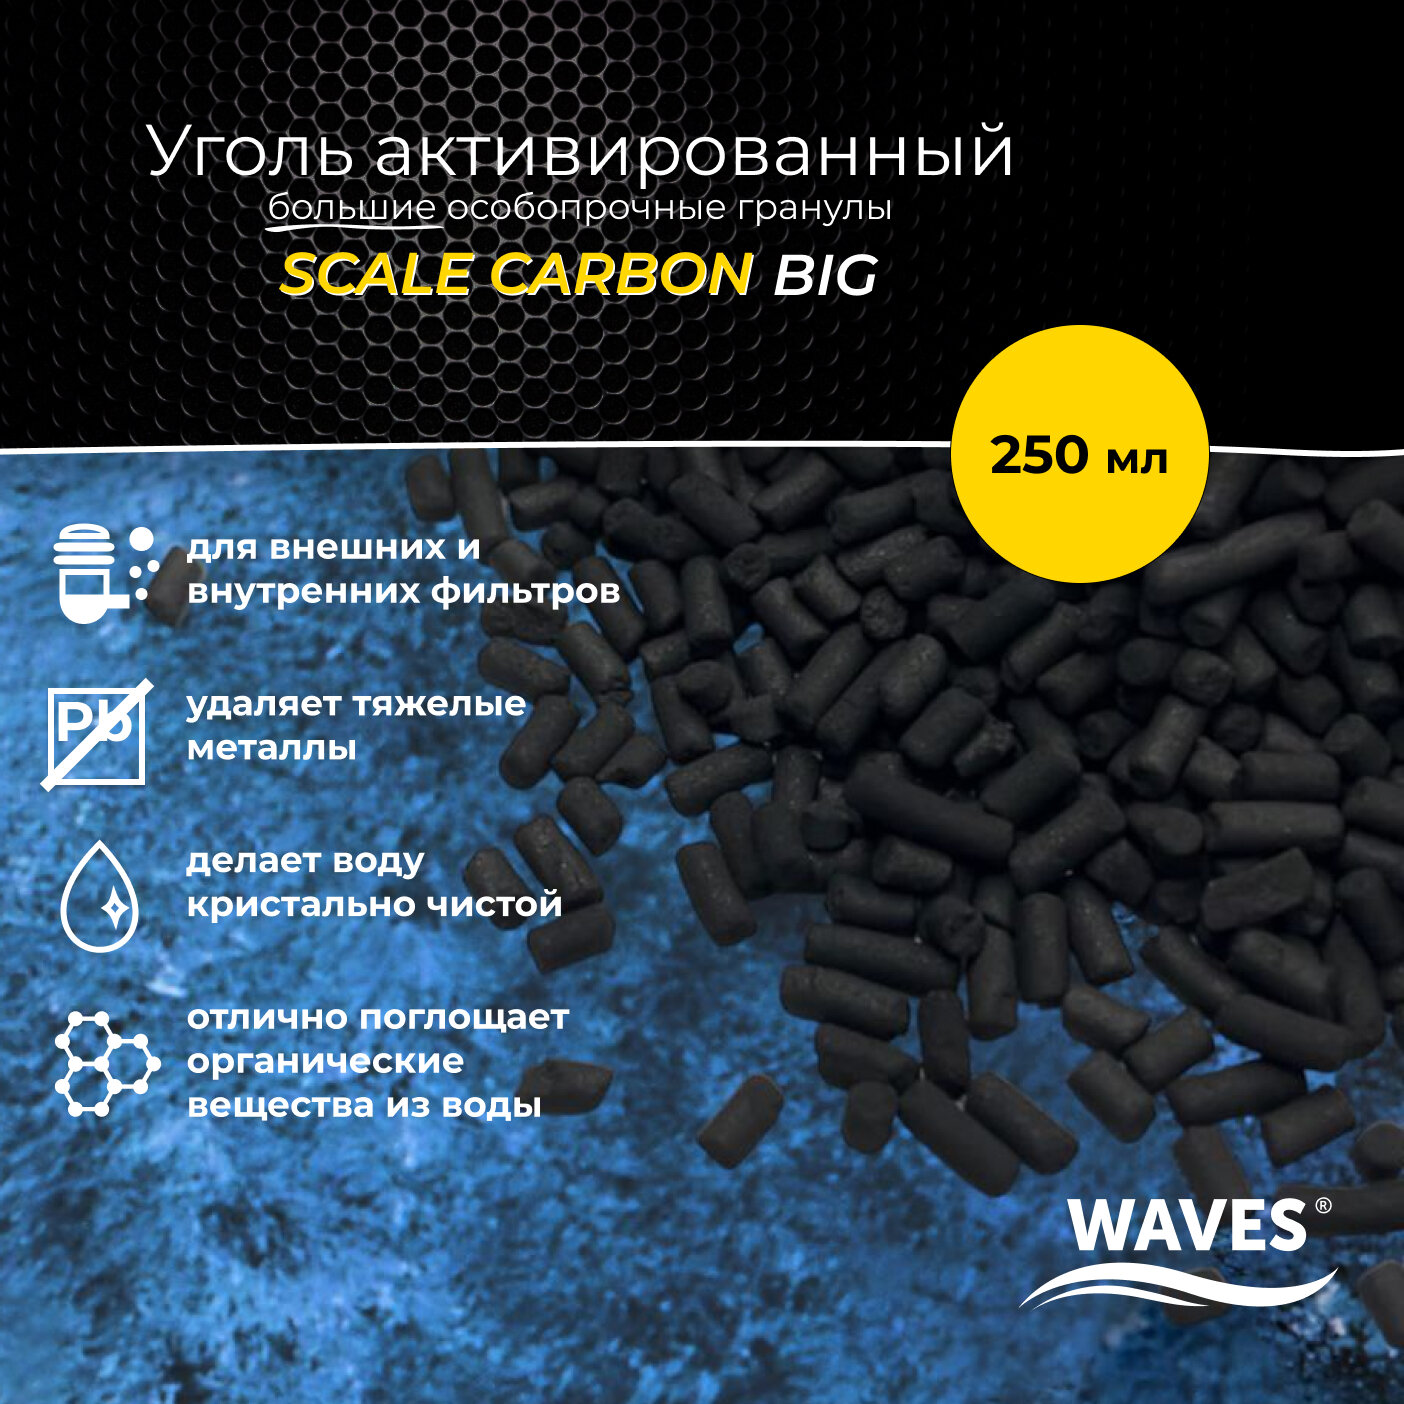 Уголь активированный WAVES Scale Carbon big, 250 мл, гранулированный, гранулы толщиной 2 мм (длина - 2-9 мм), наполнитель для аквариумного фильтра